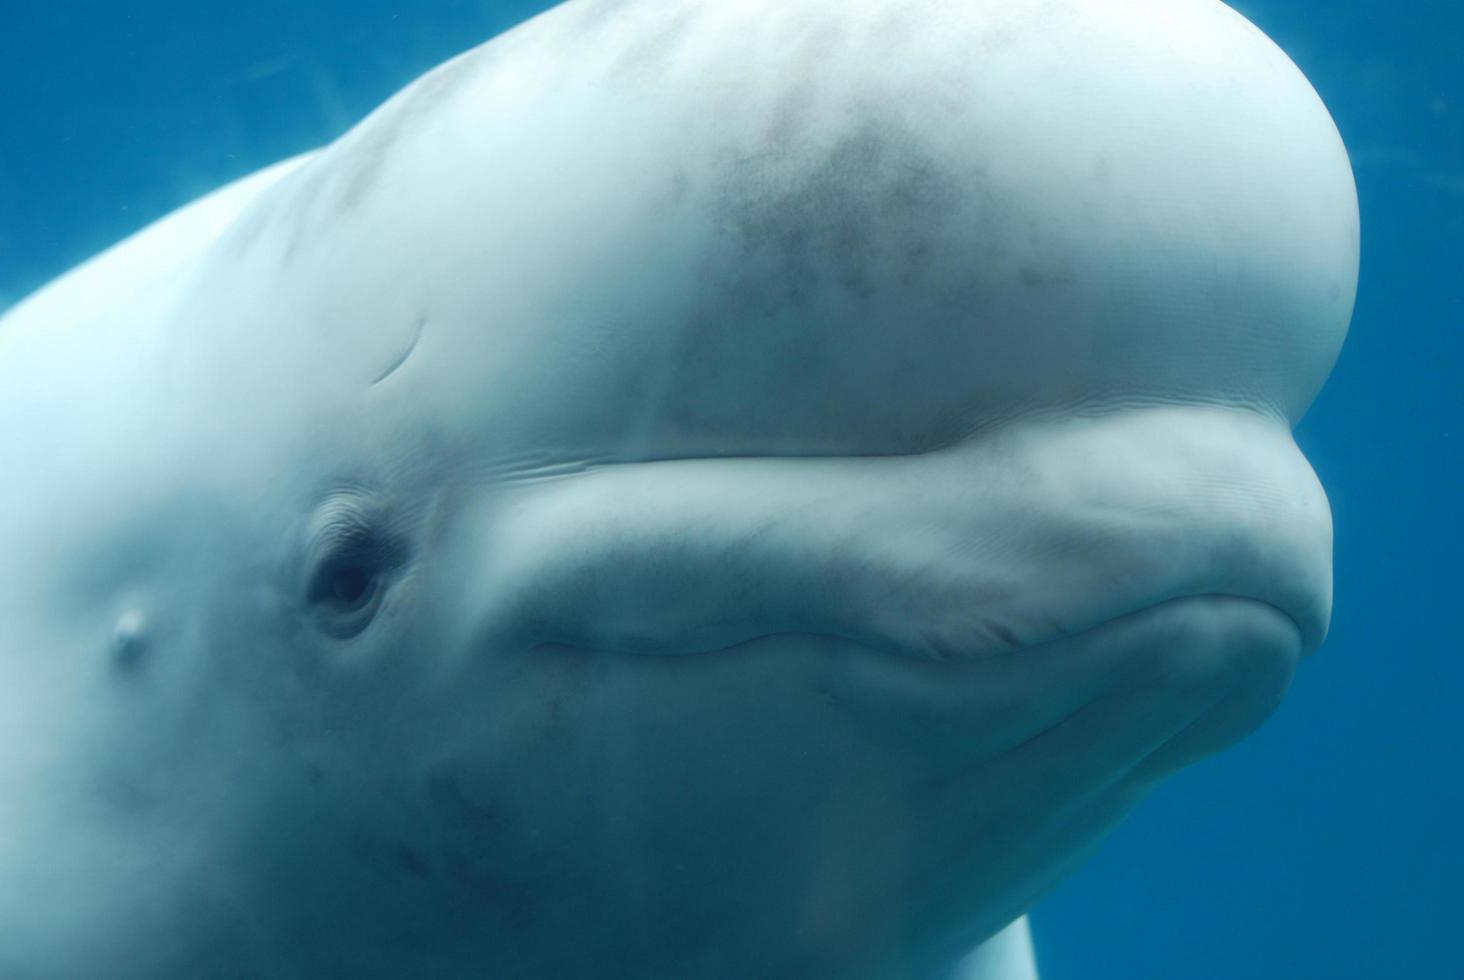 perfil de uma baleia beluga nadando debaixo d'água foto